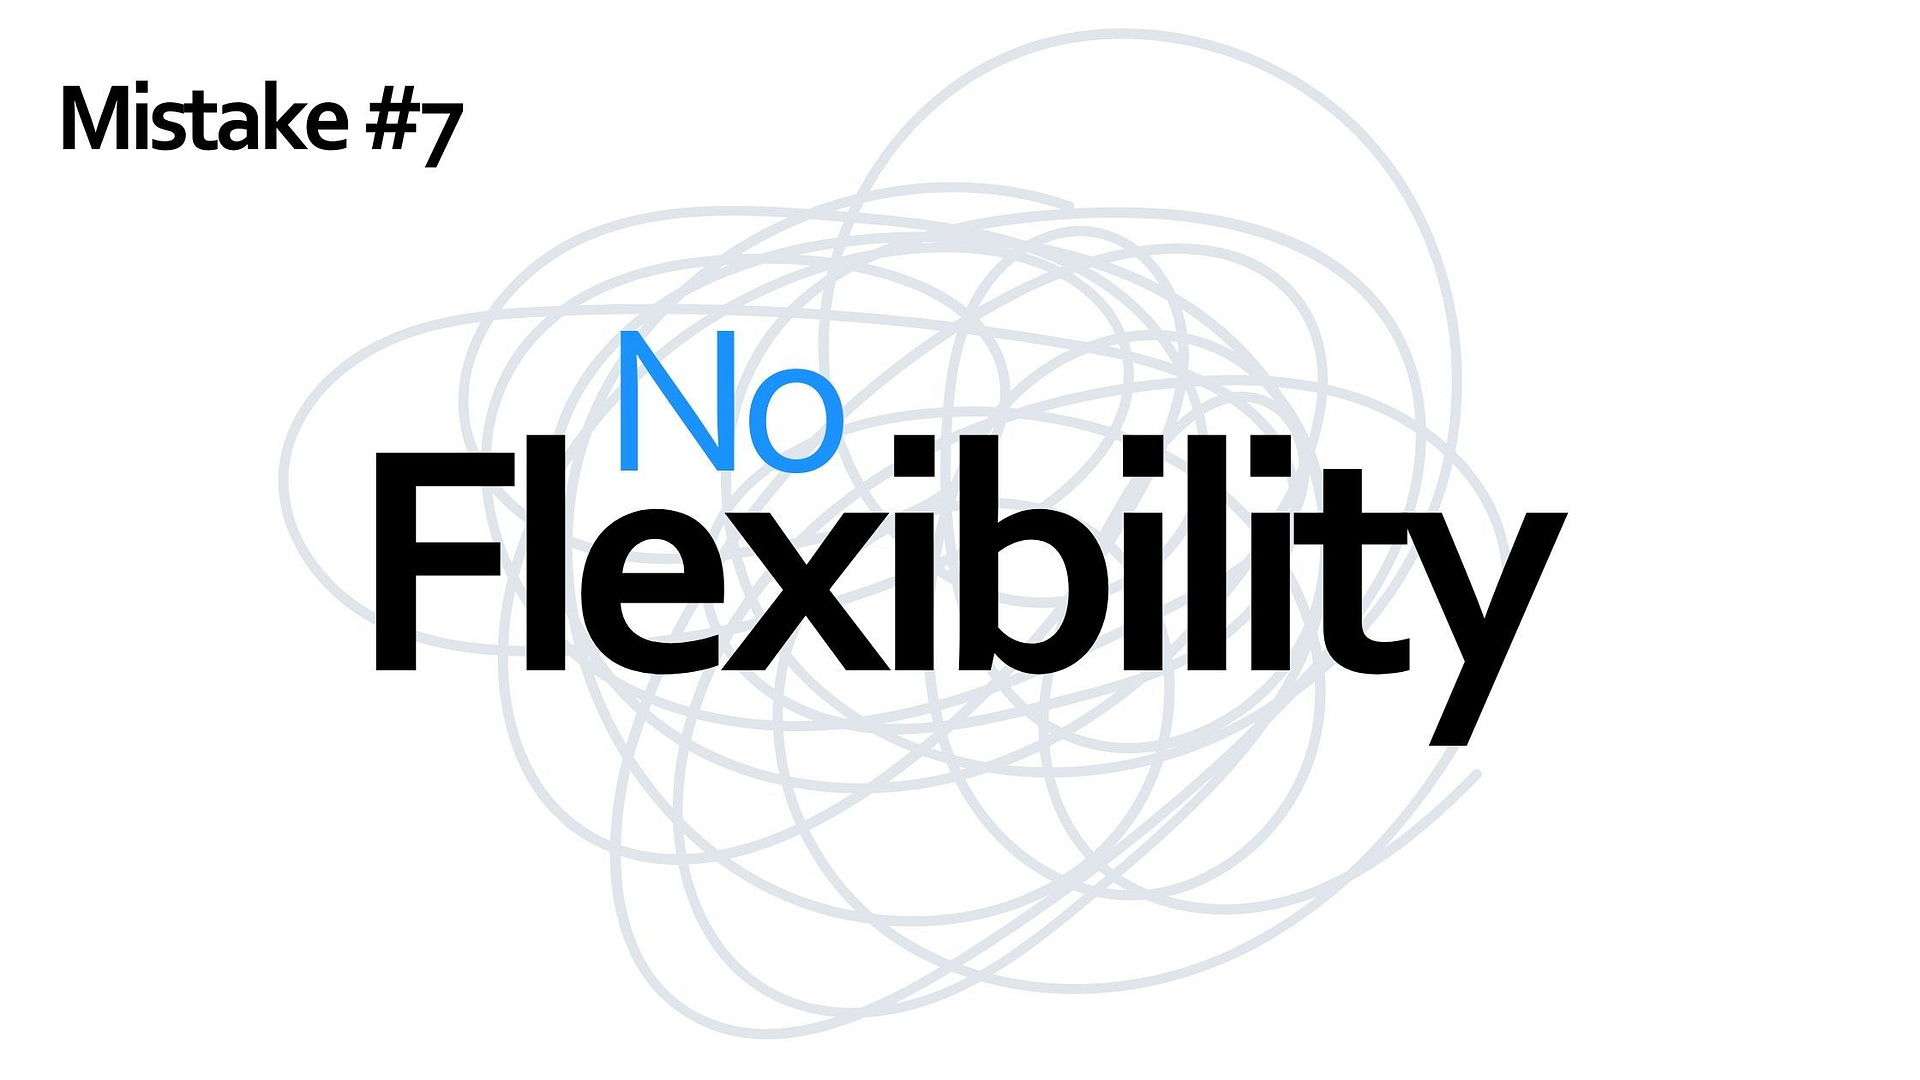 Mistake #7 - no flexibility